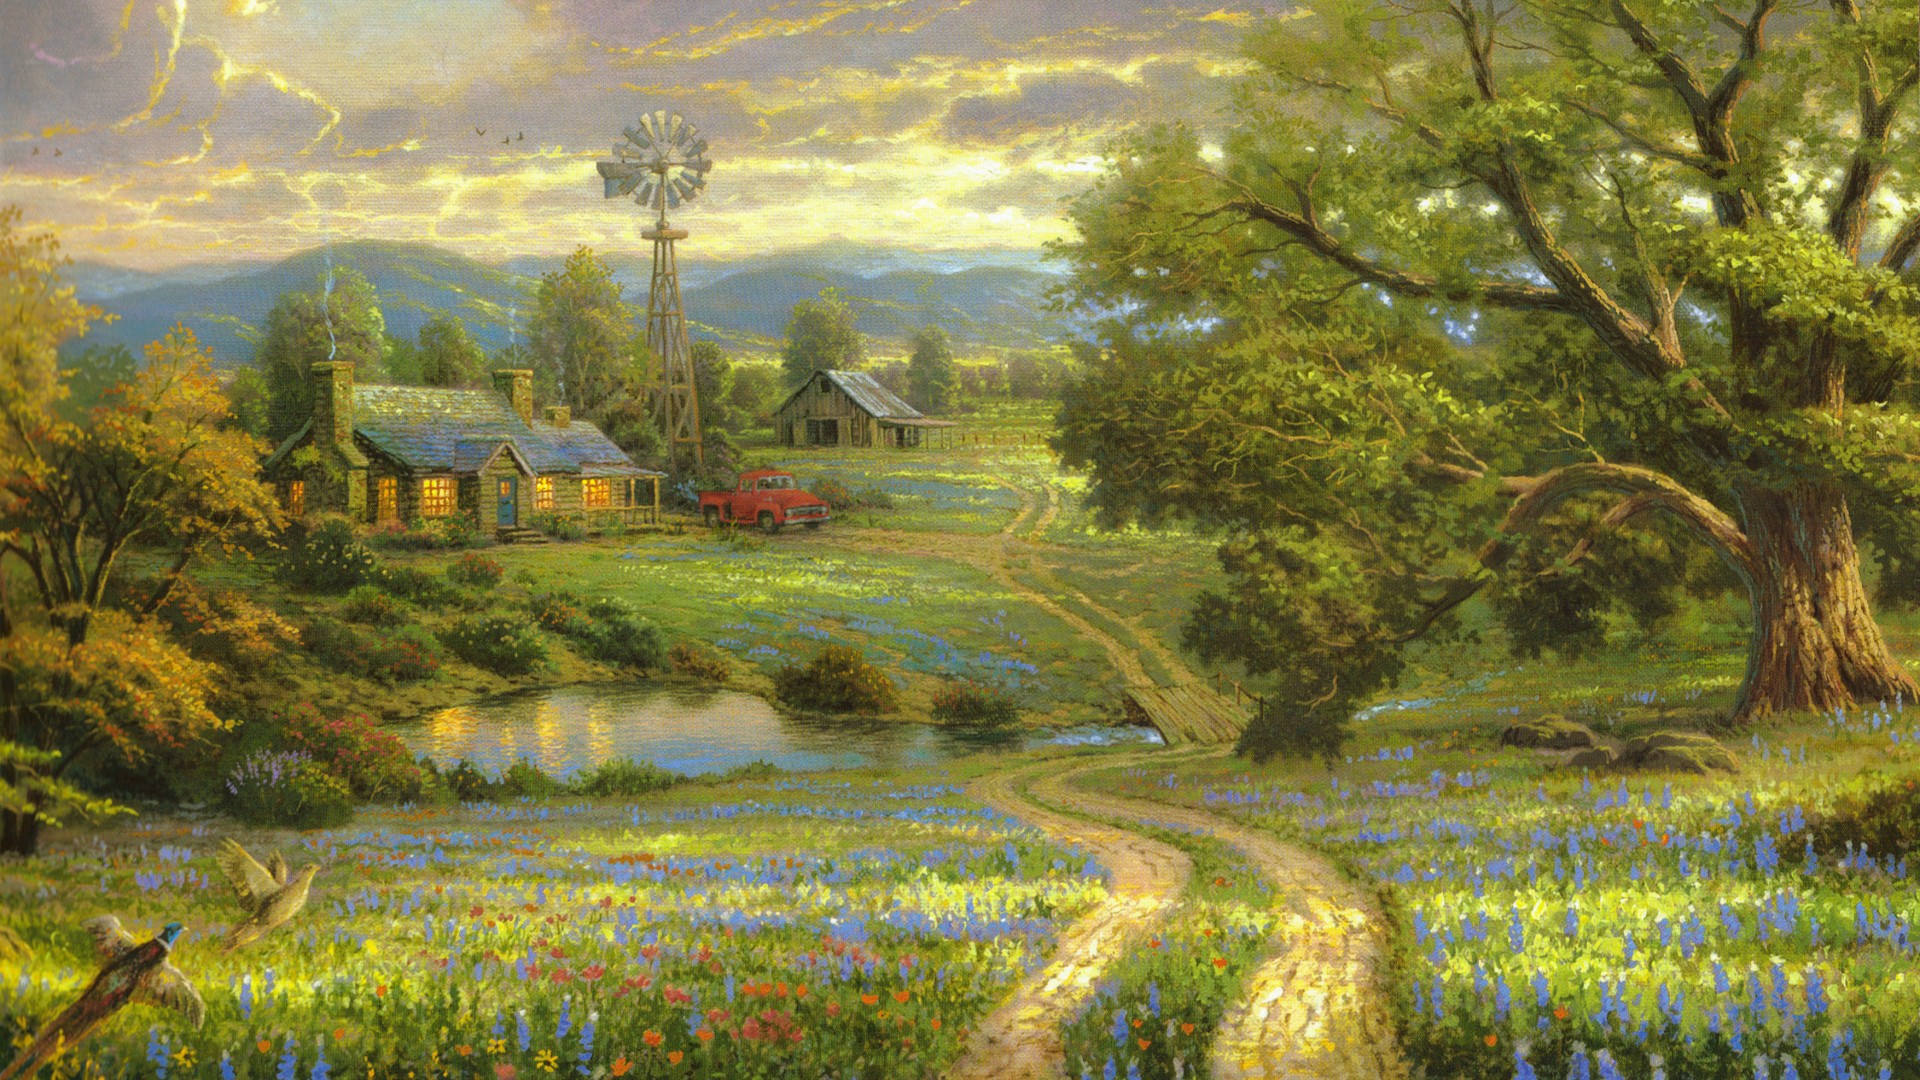 乡间生活,马路,房子,树,湖,花,托马斯·金凯德,风景绘画壁纸